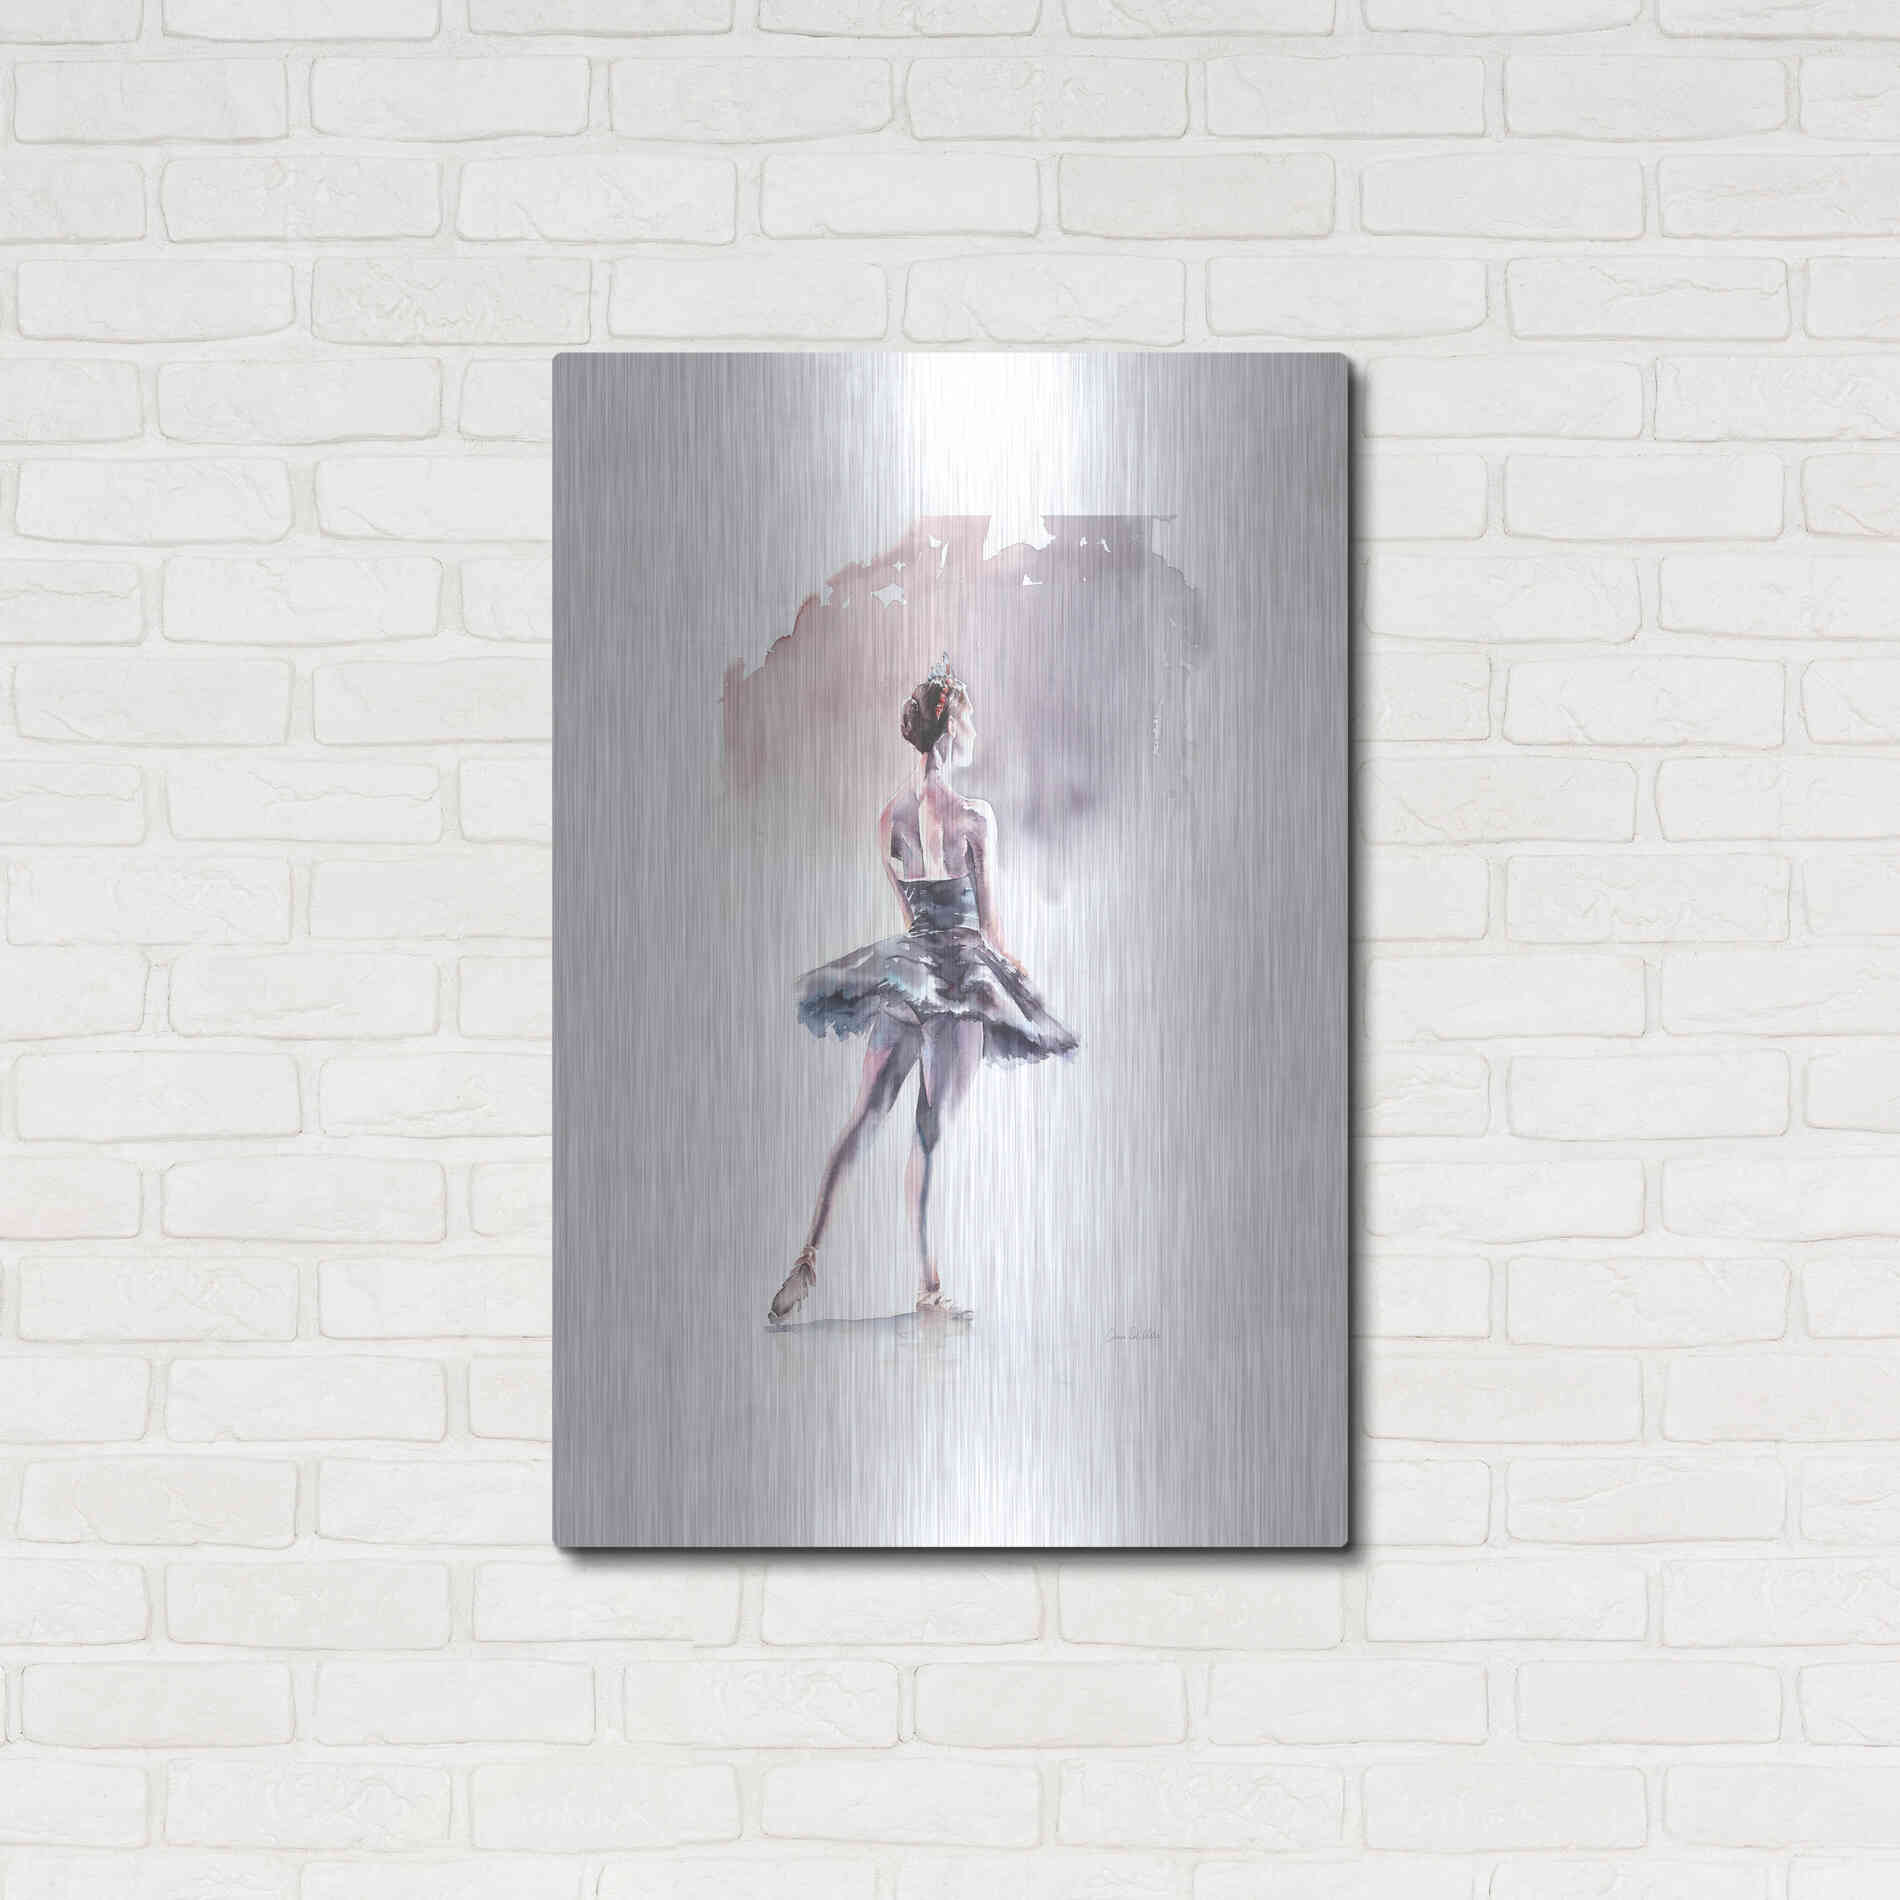 Luxe Metal Art 'Ballet I White Border' by Alan Majchrowicz, Metal Wall Art,24x36